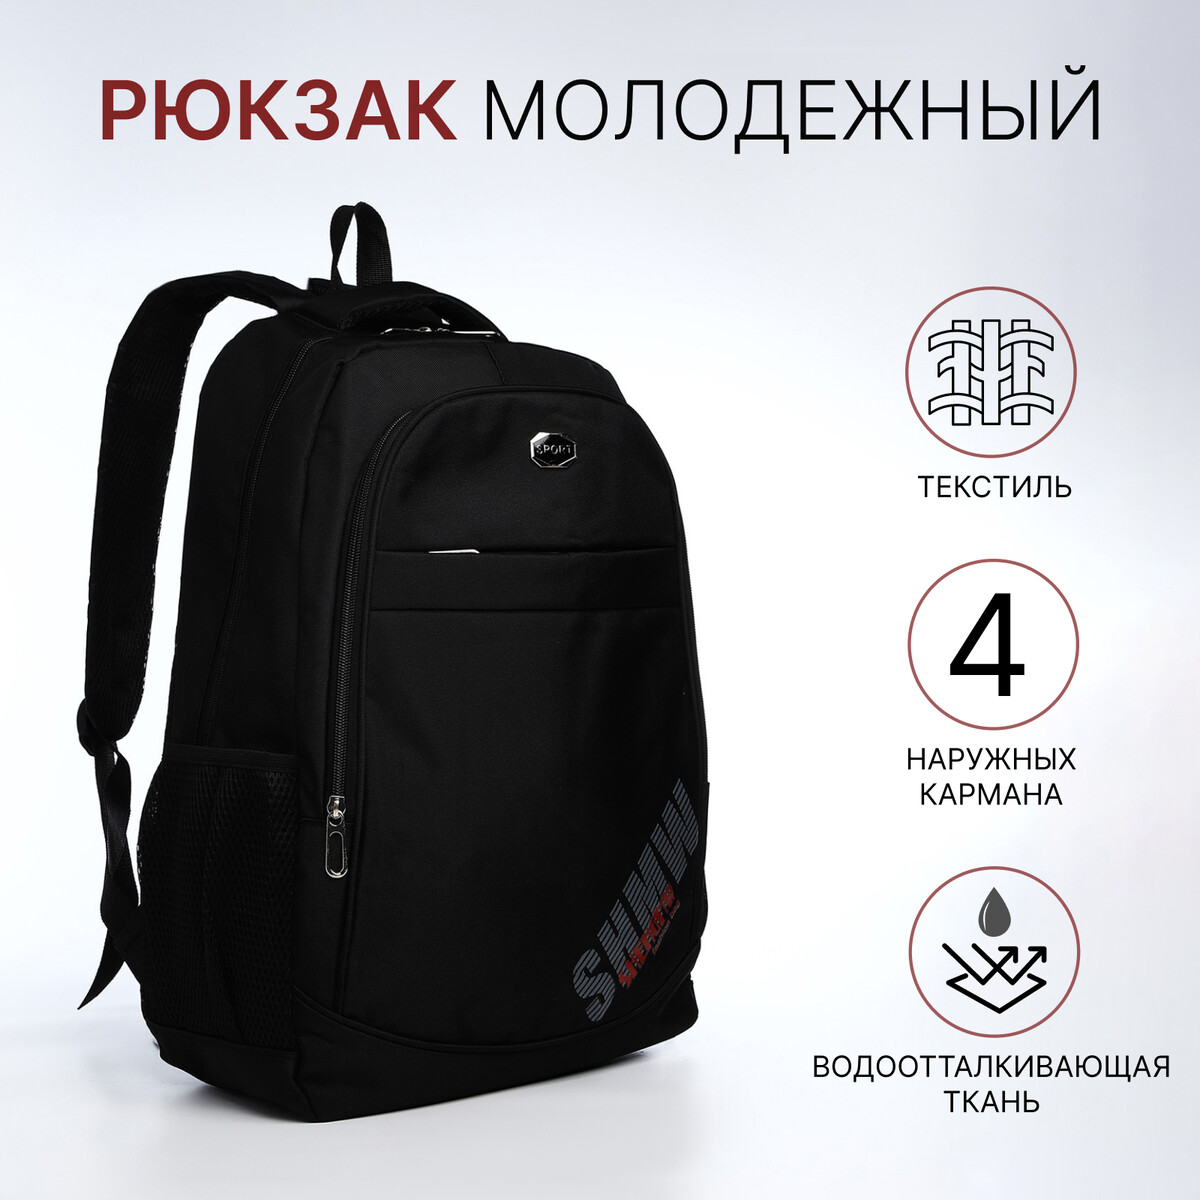 Рюкзак молодежный из текстиля на молнии, 4 кармана, цвет черный/красный